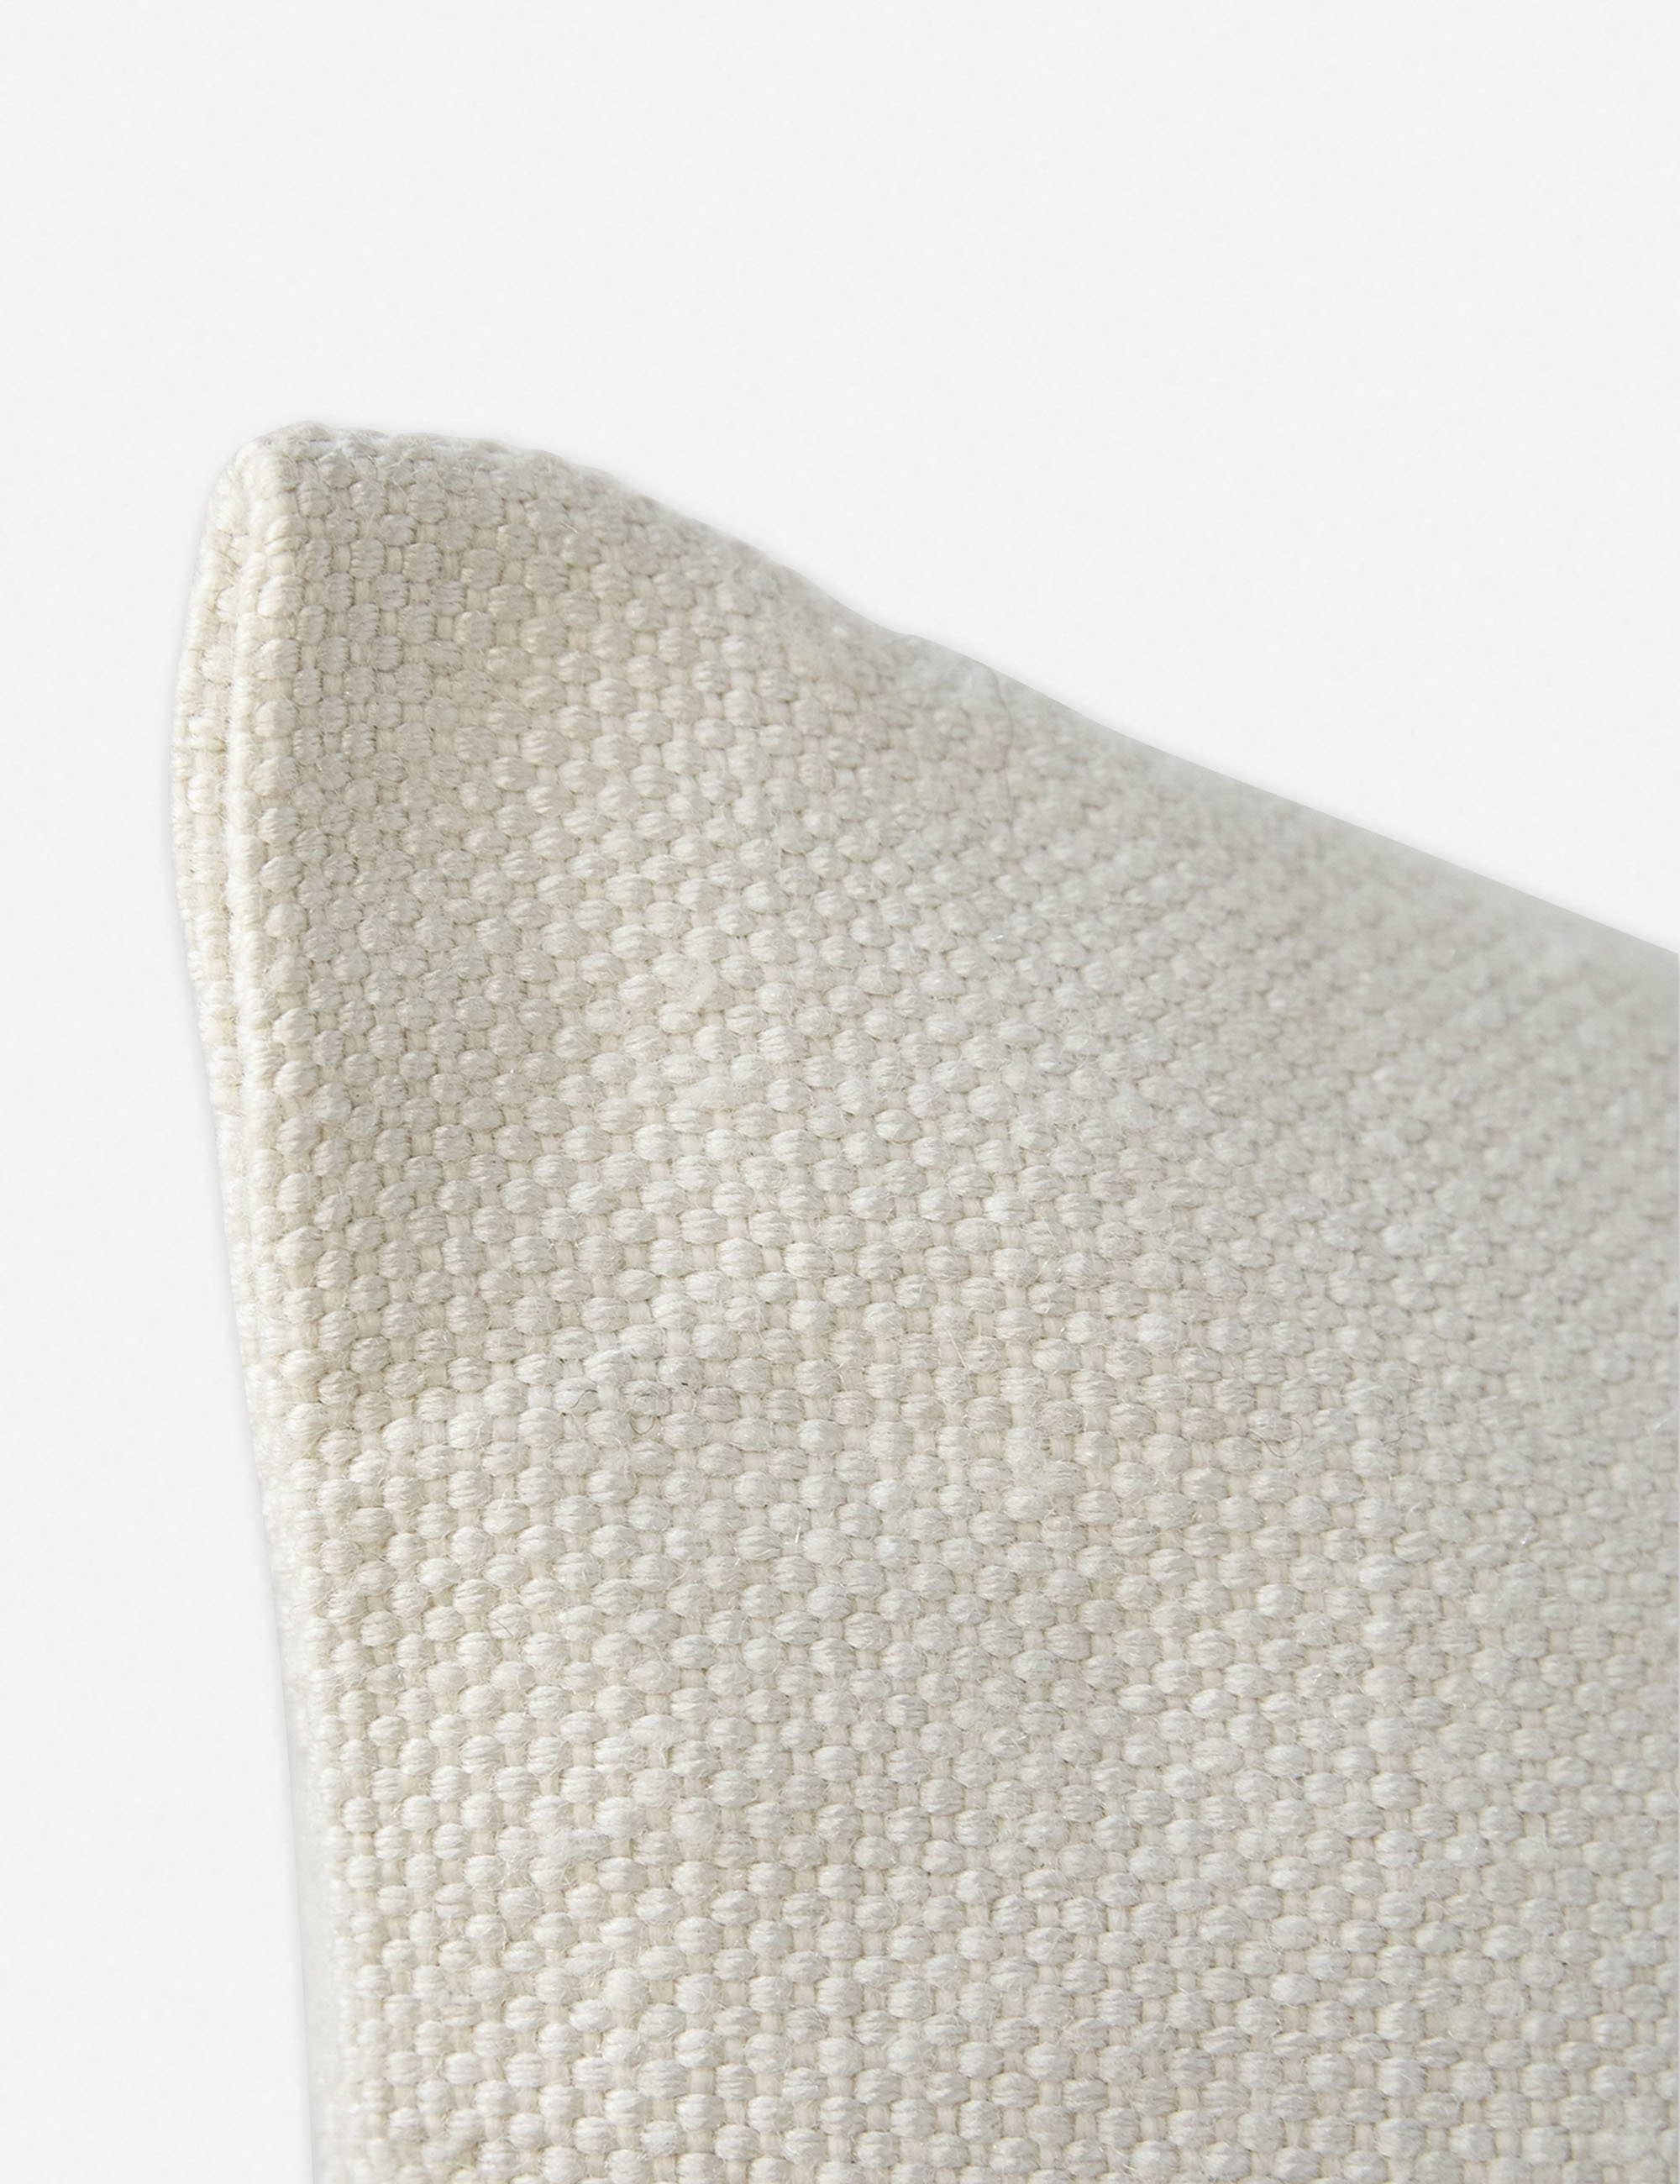 Katya Indoor/Outdoor Pillow, Black Stripe, 20" x 20" - Image 2